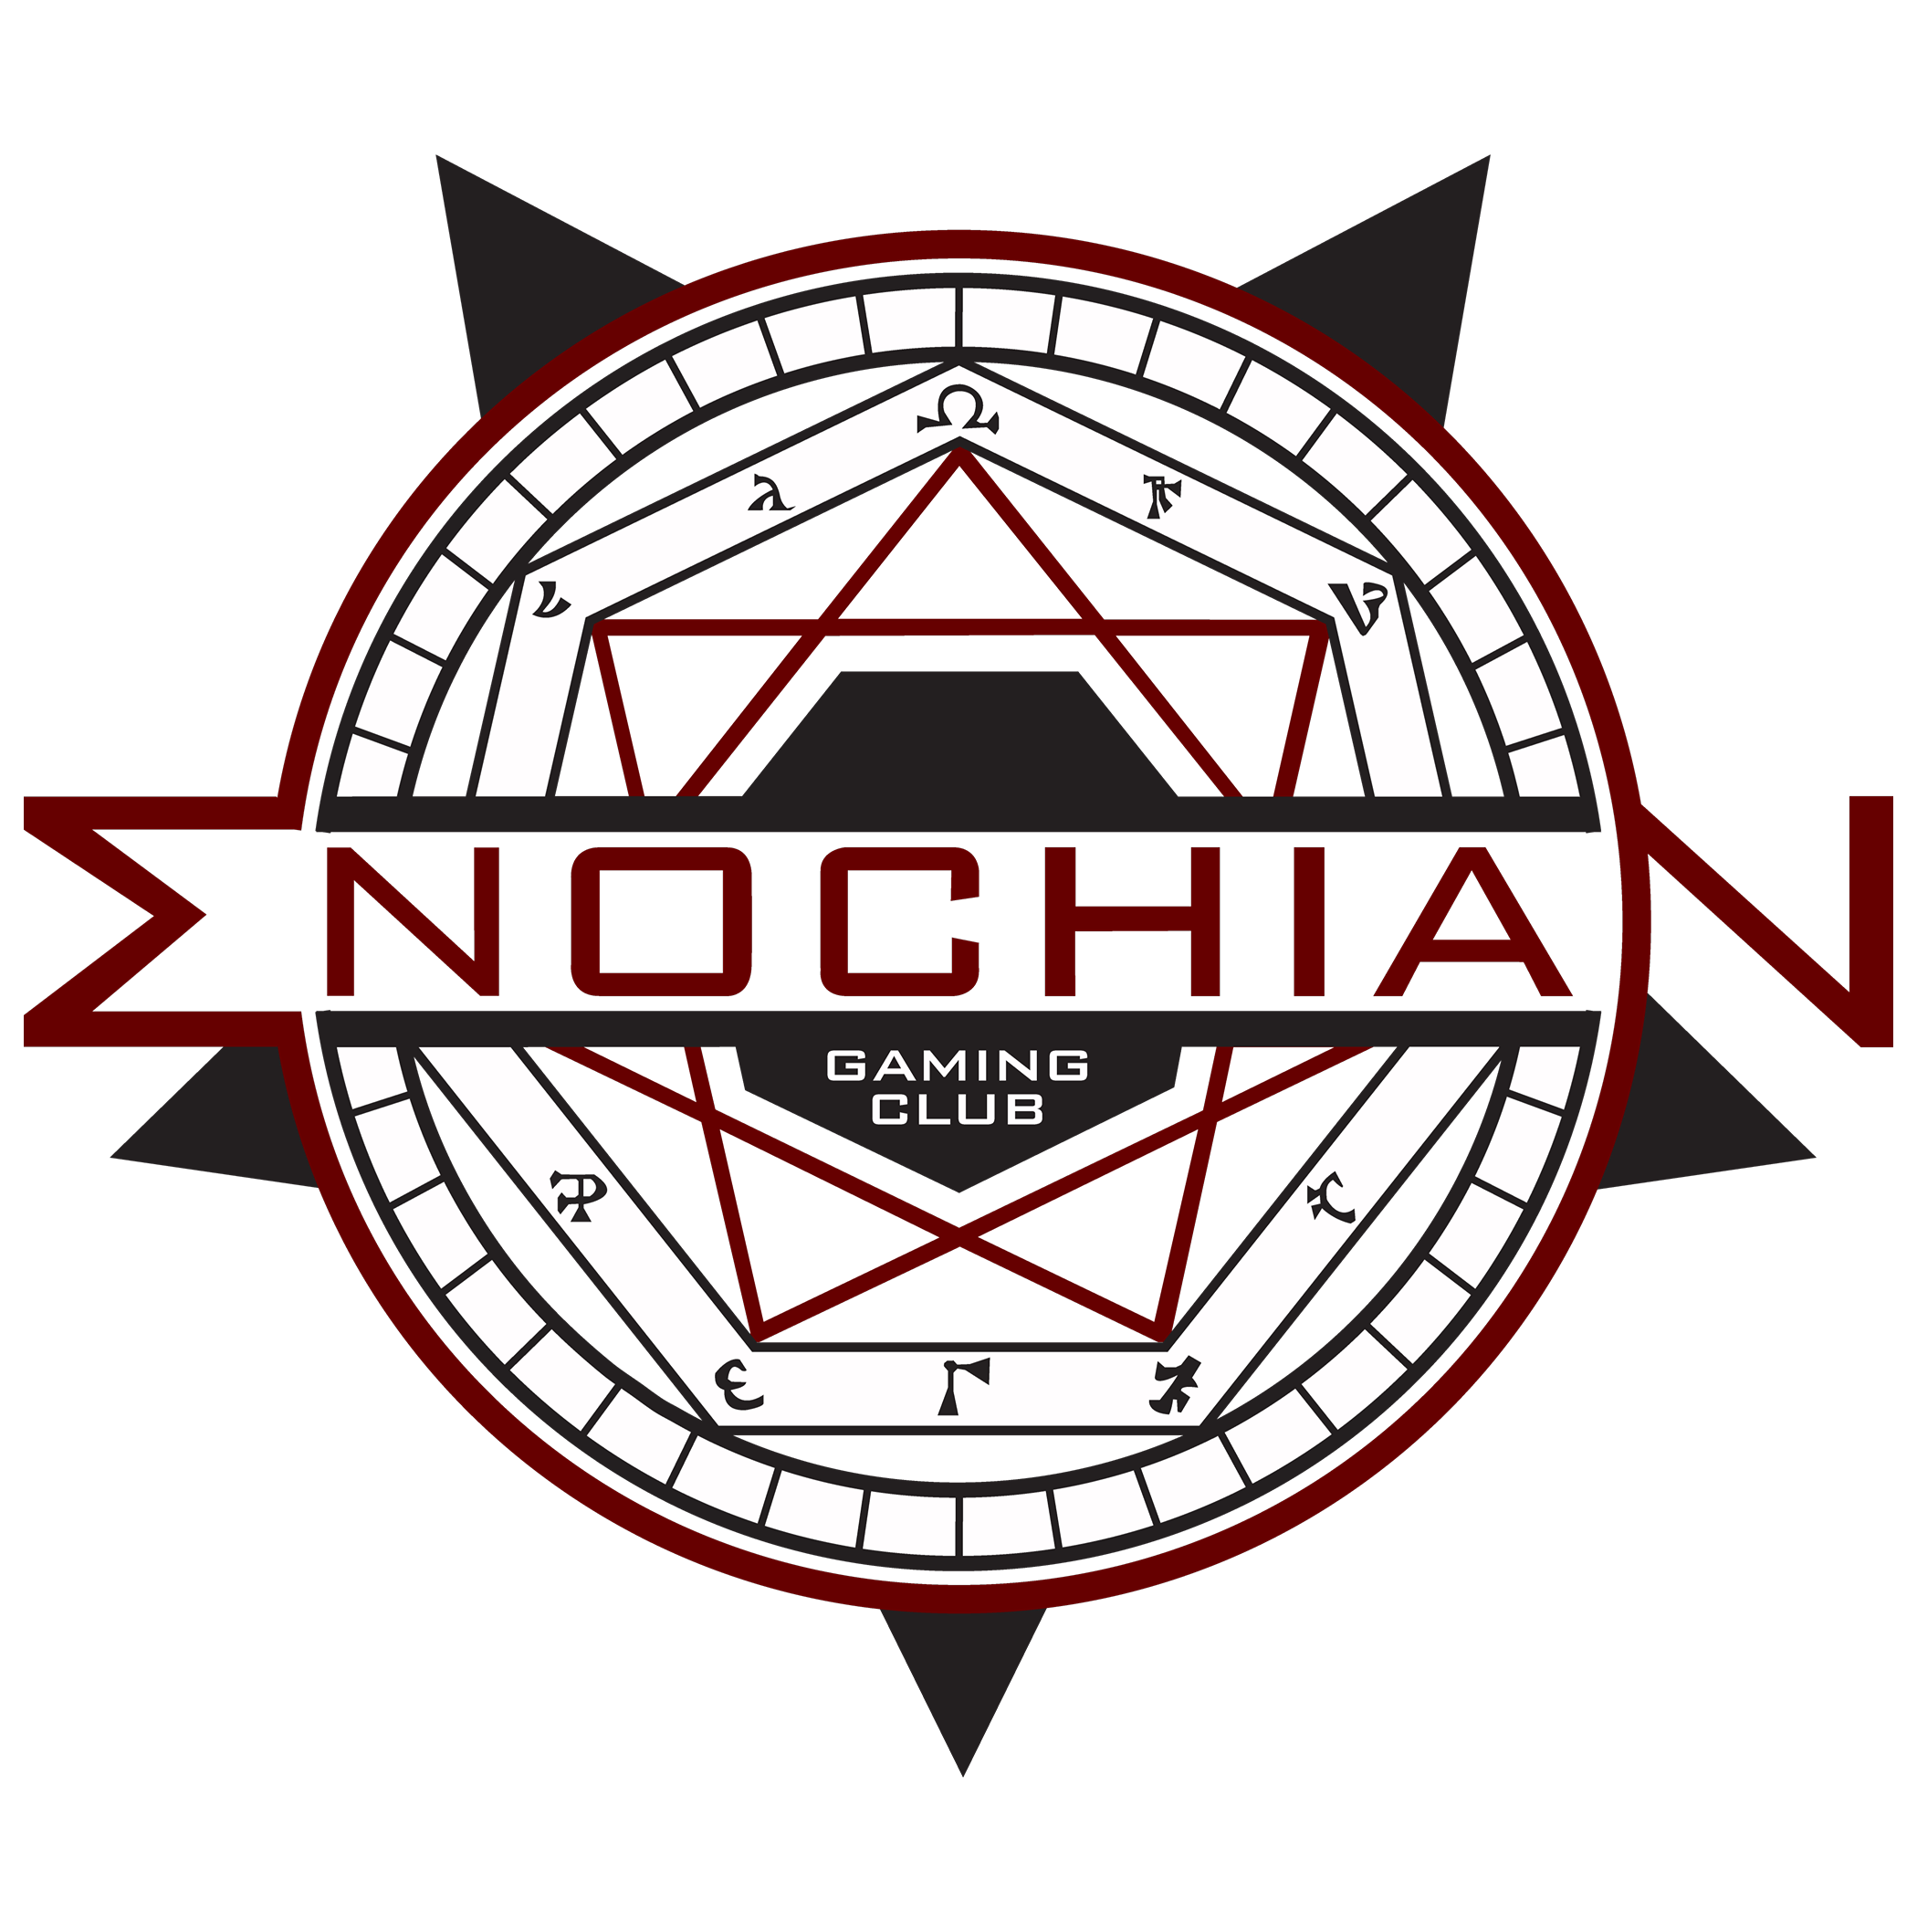 Enochian Gaming